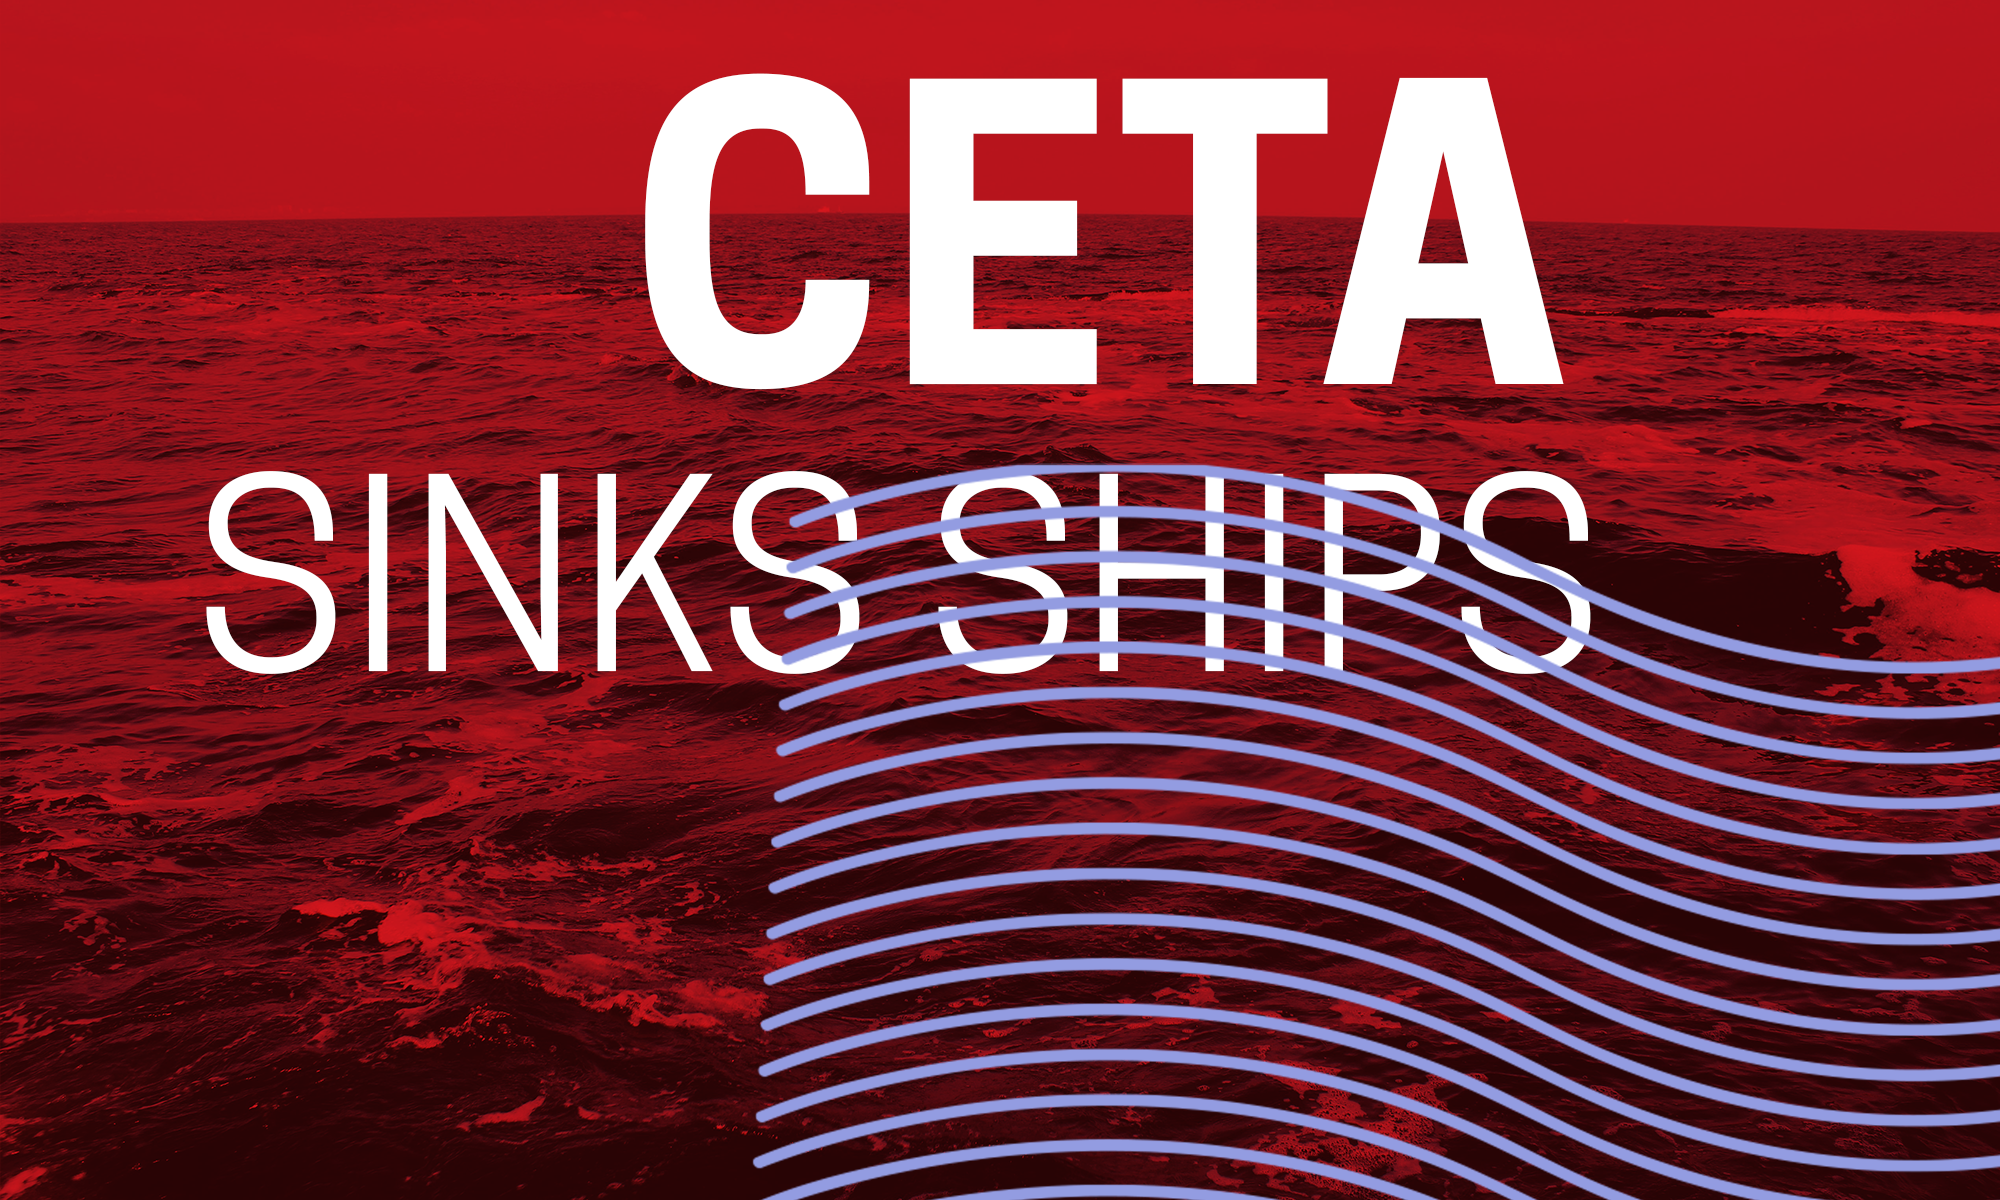 CETA SINKS SHIPS